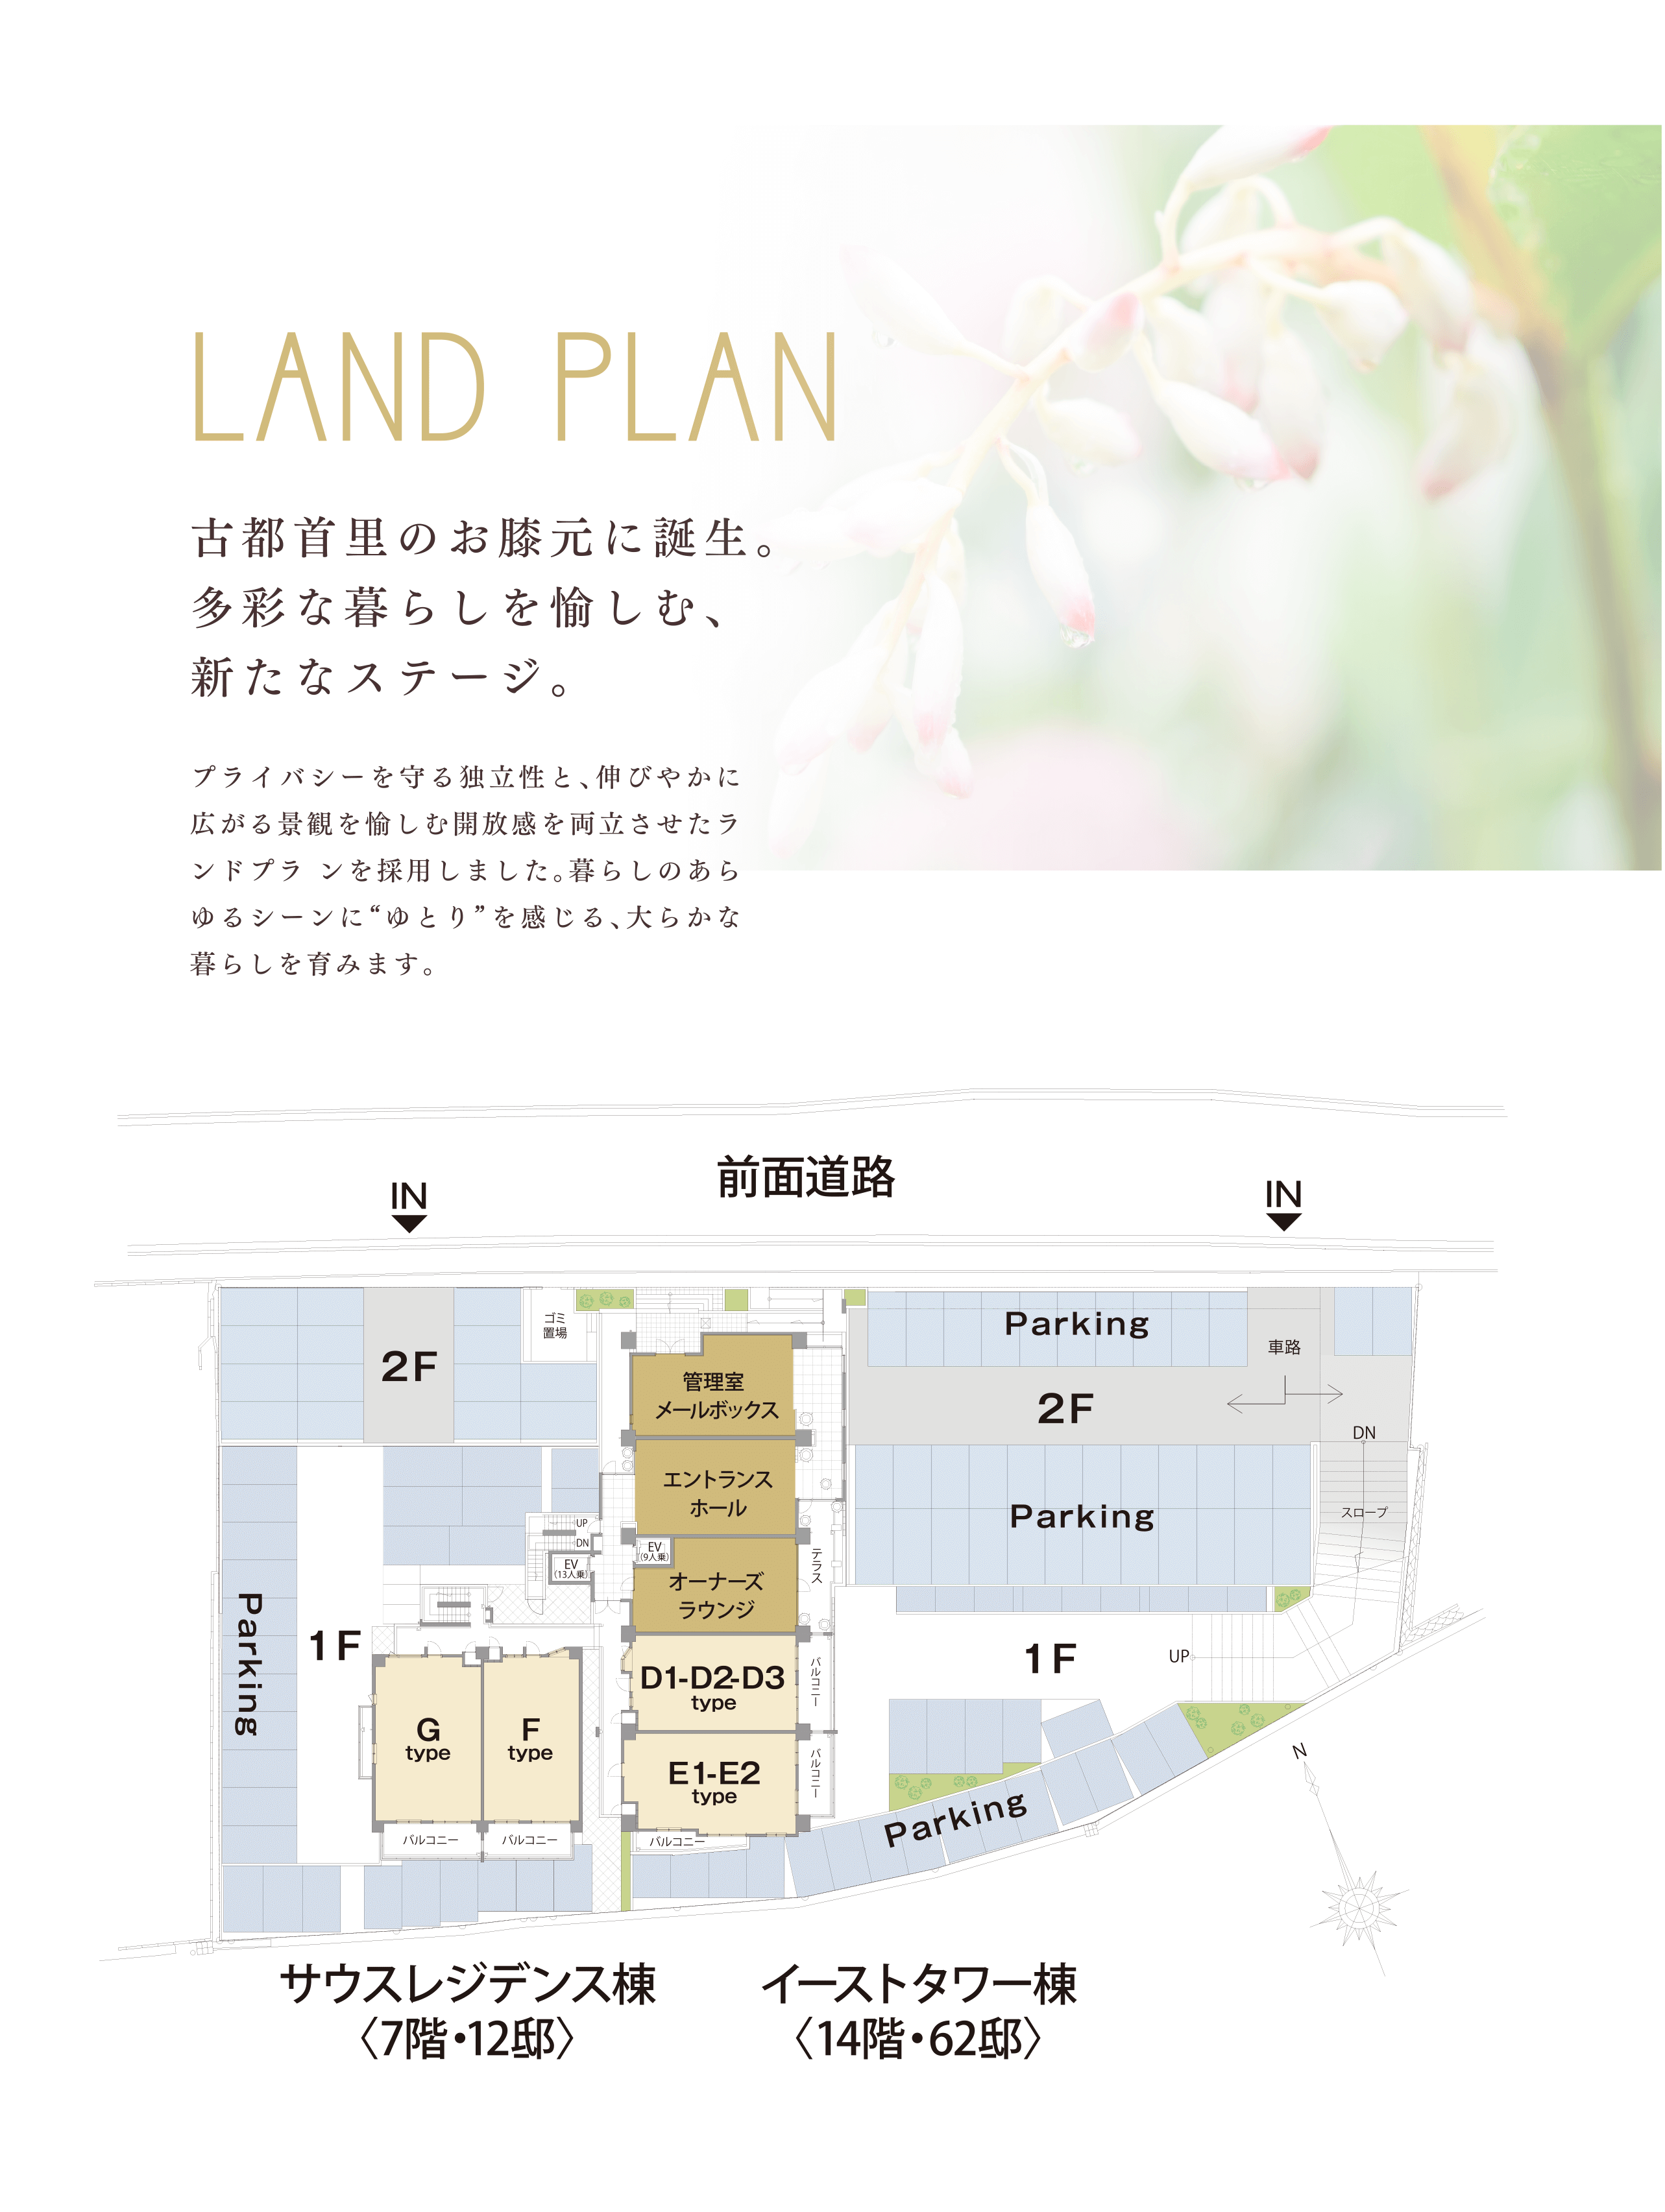 landplan